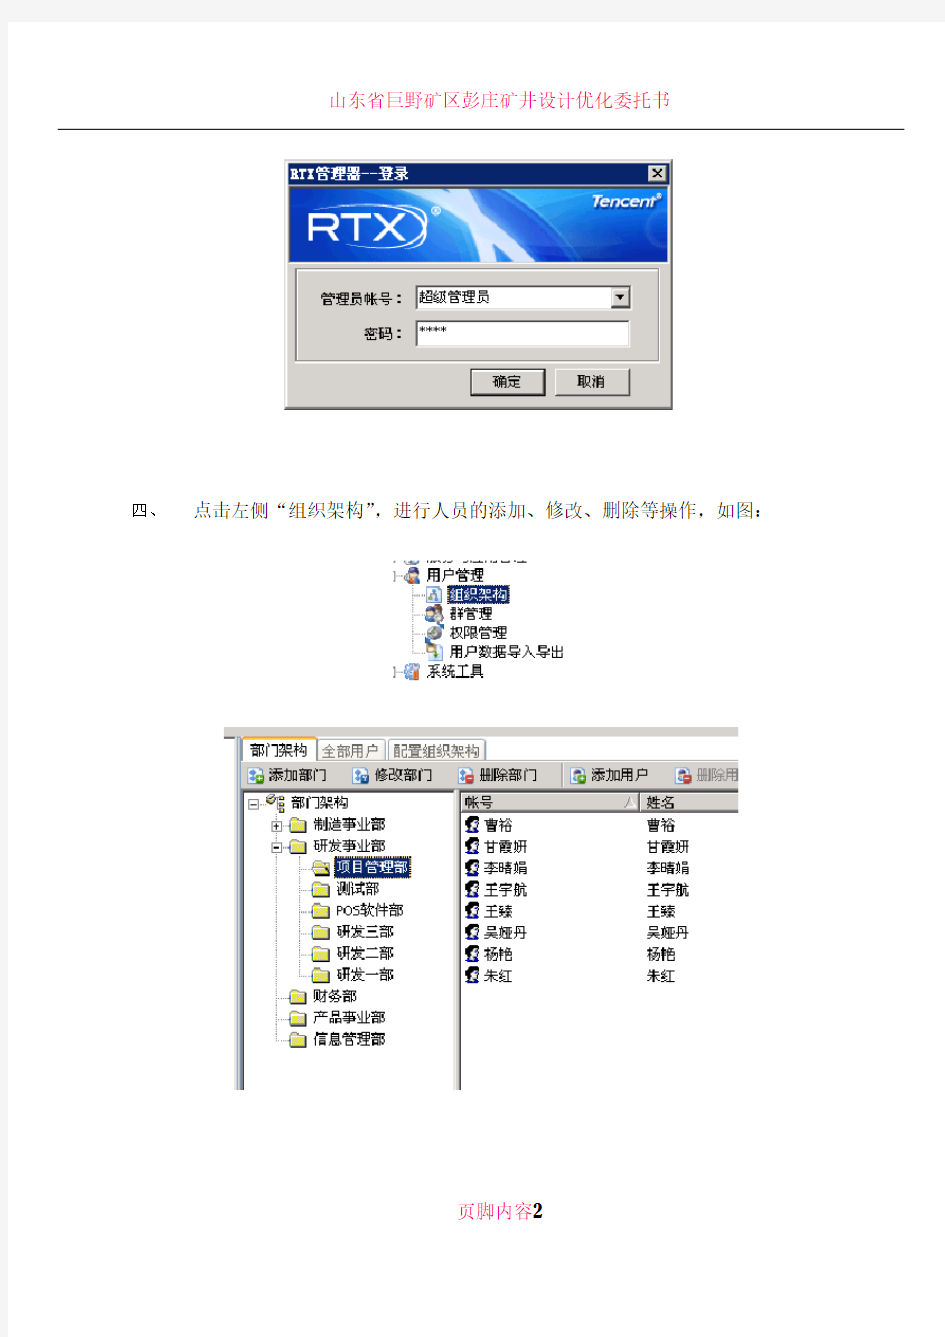 RTX管理操作手册